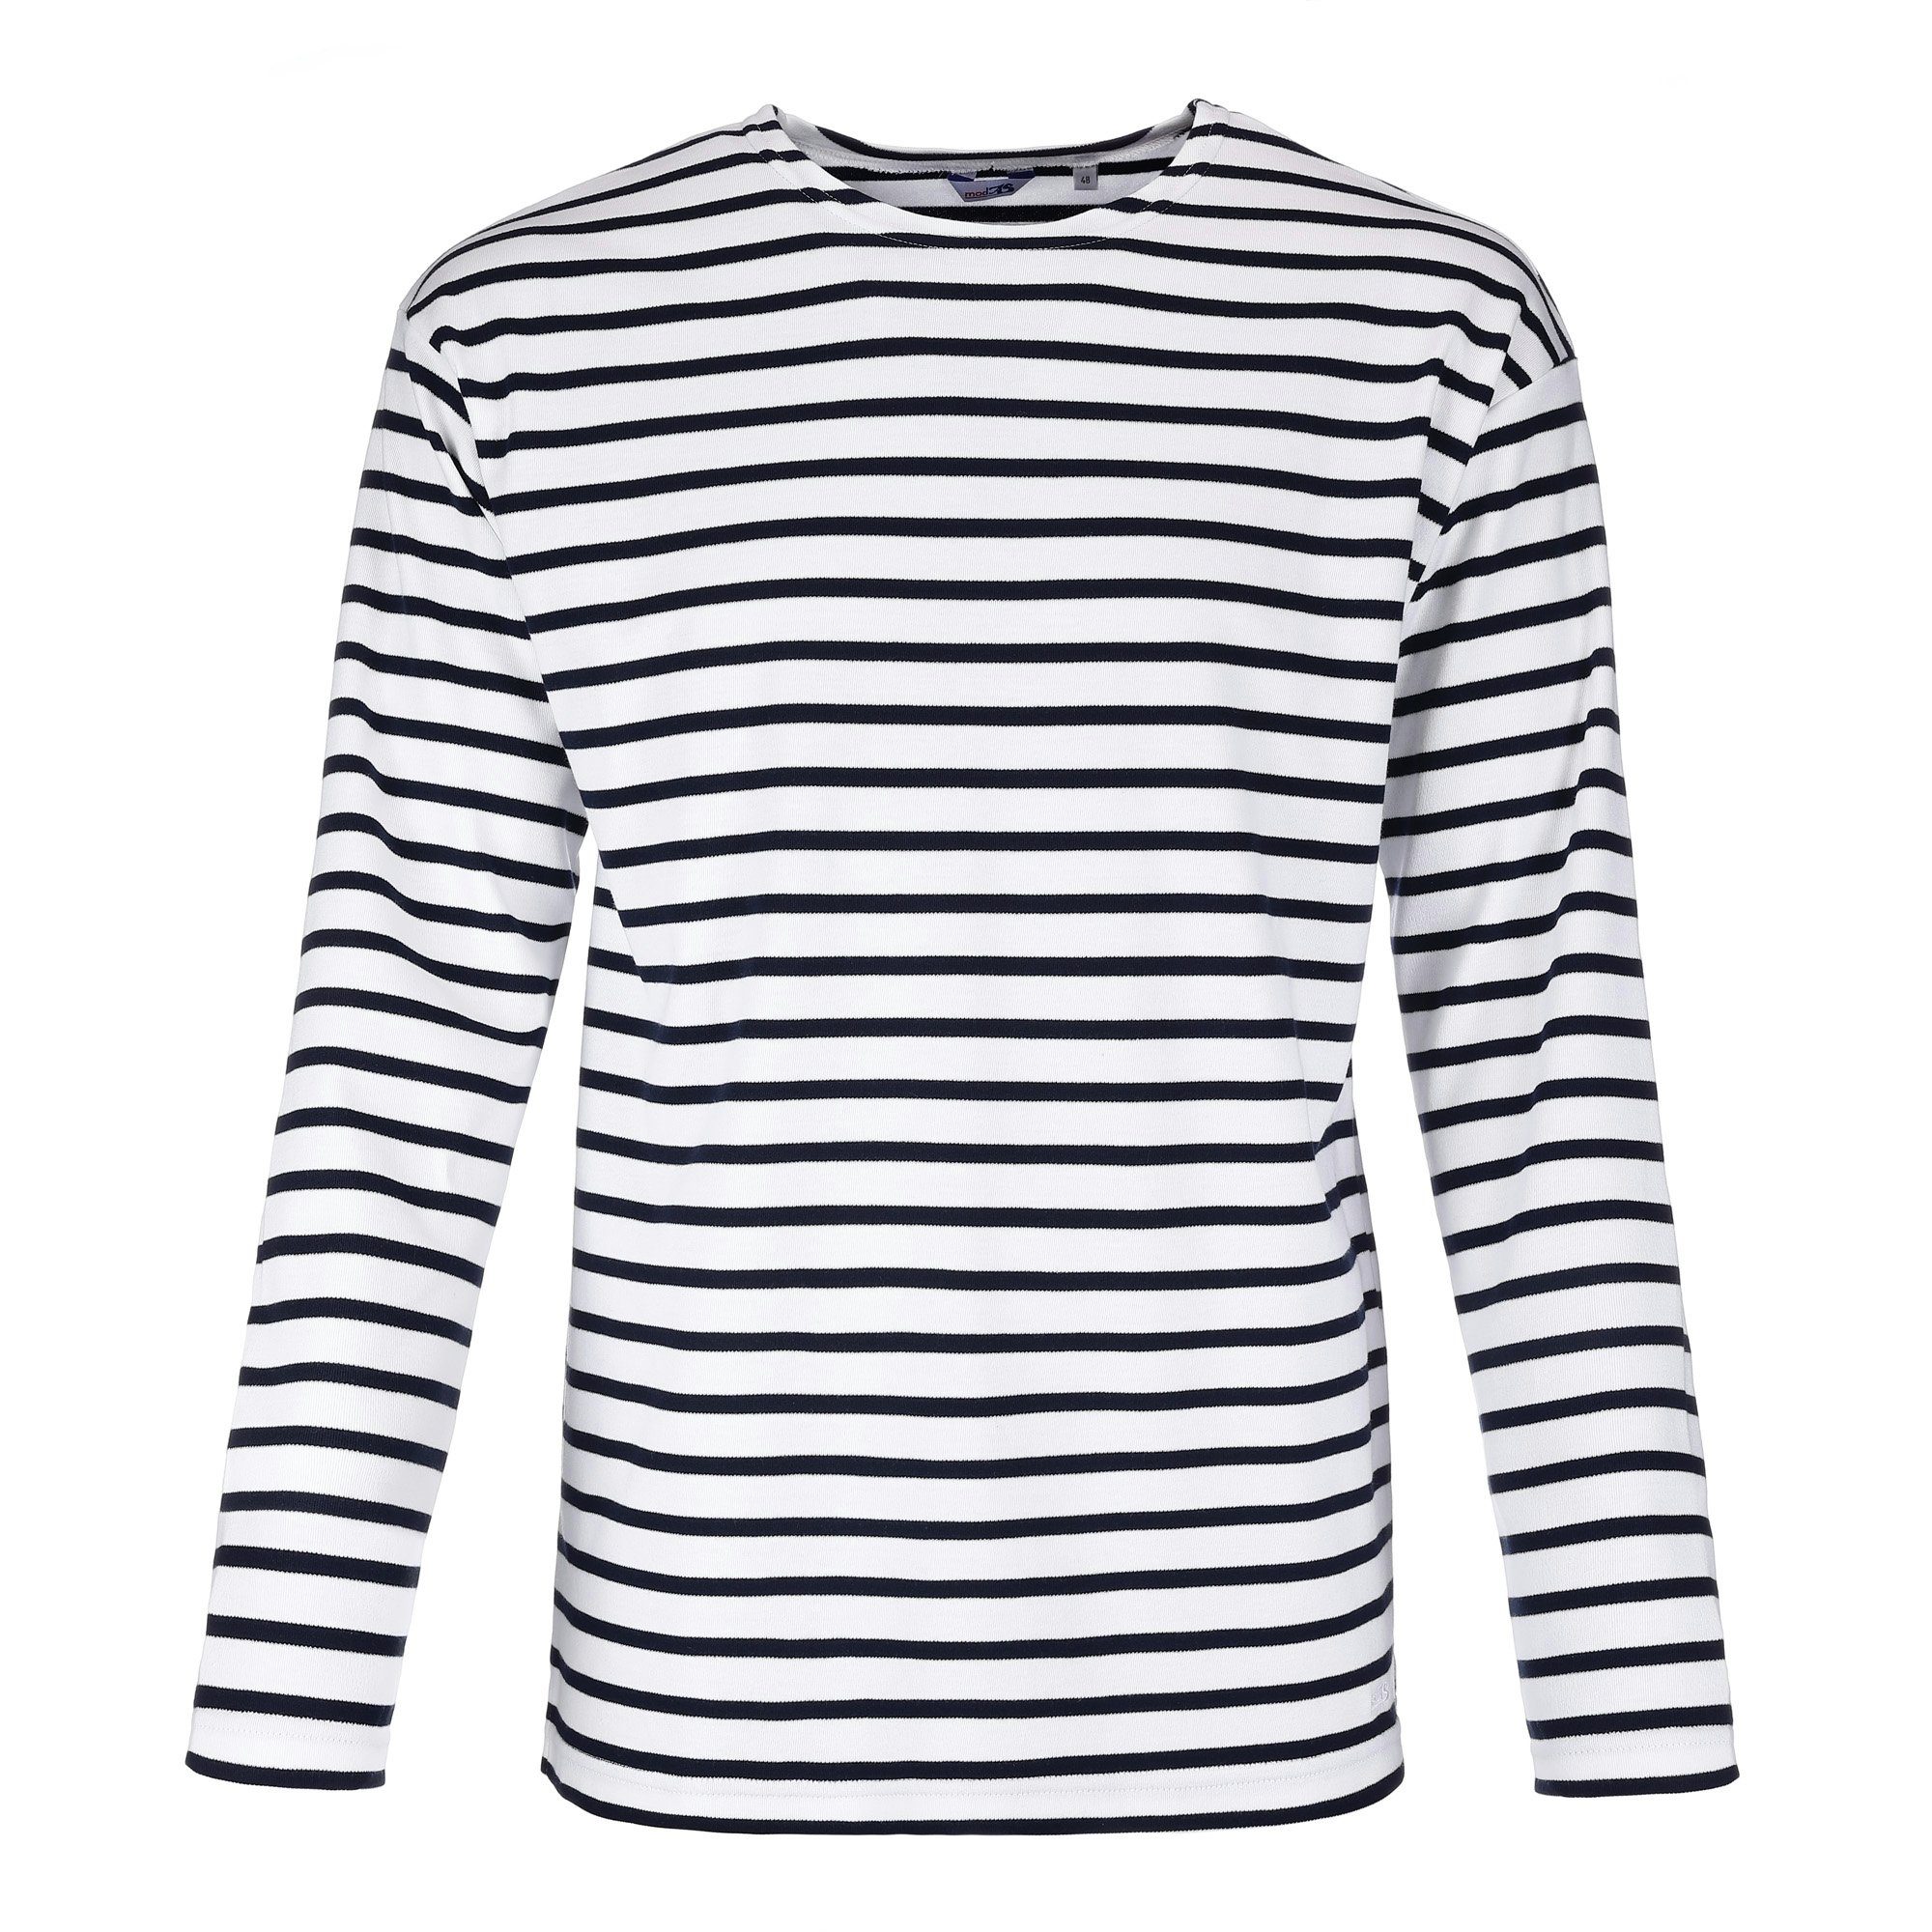 (04) modAS Herren Bretonisches Langarmshirt Baumwolle aus Maritim Streifenshirt Langarm Shirt / blau weiß